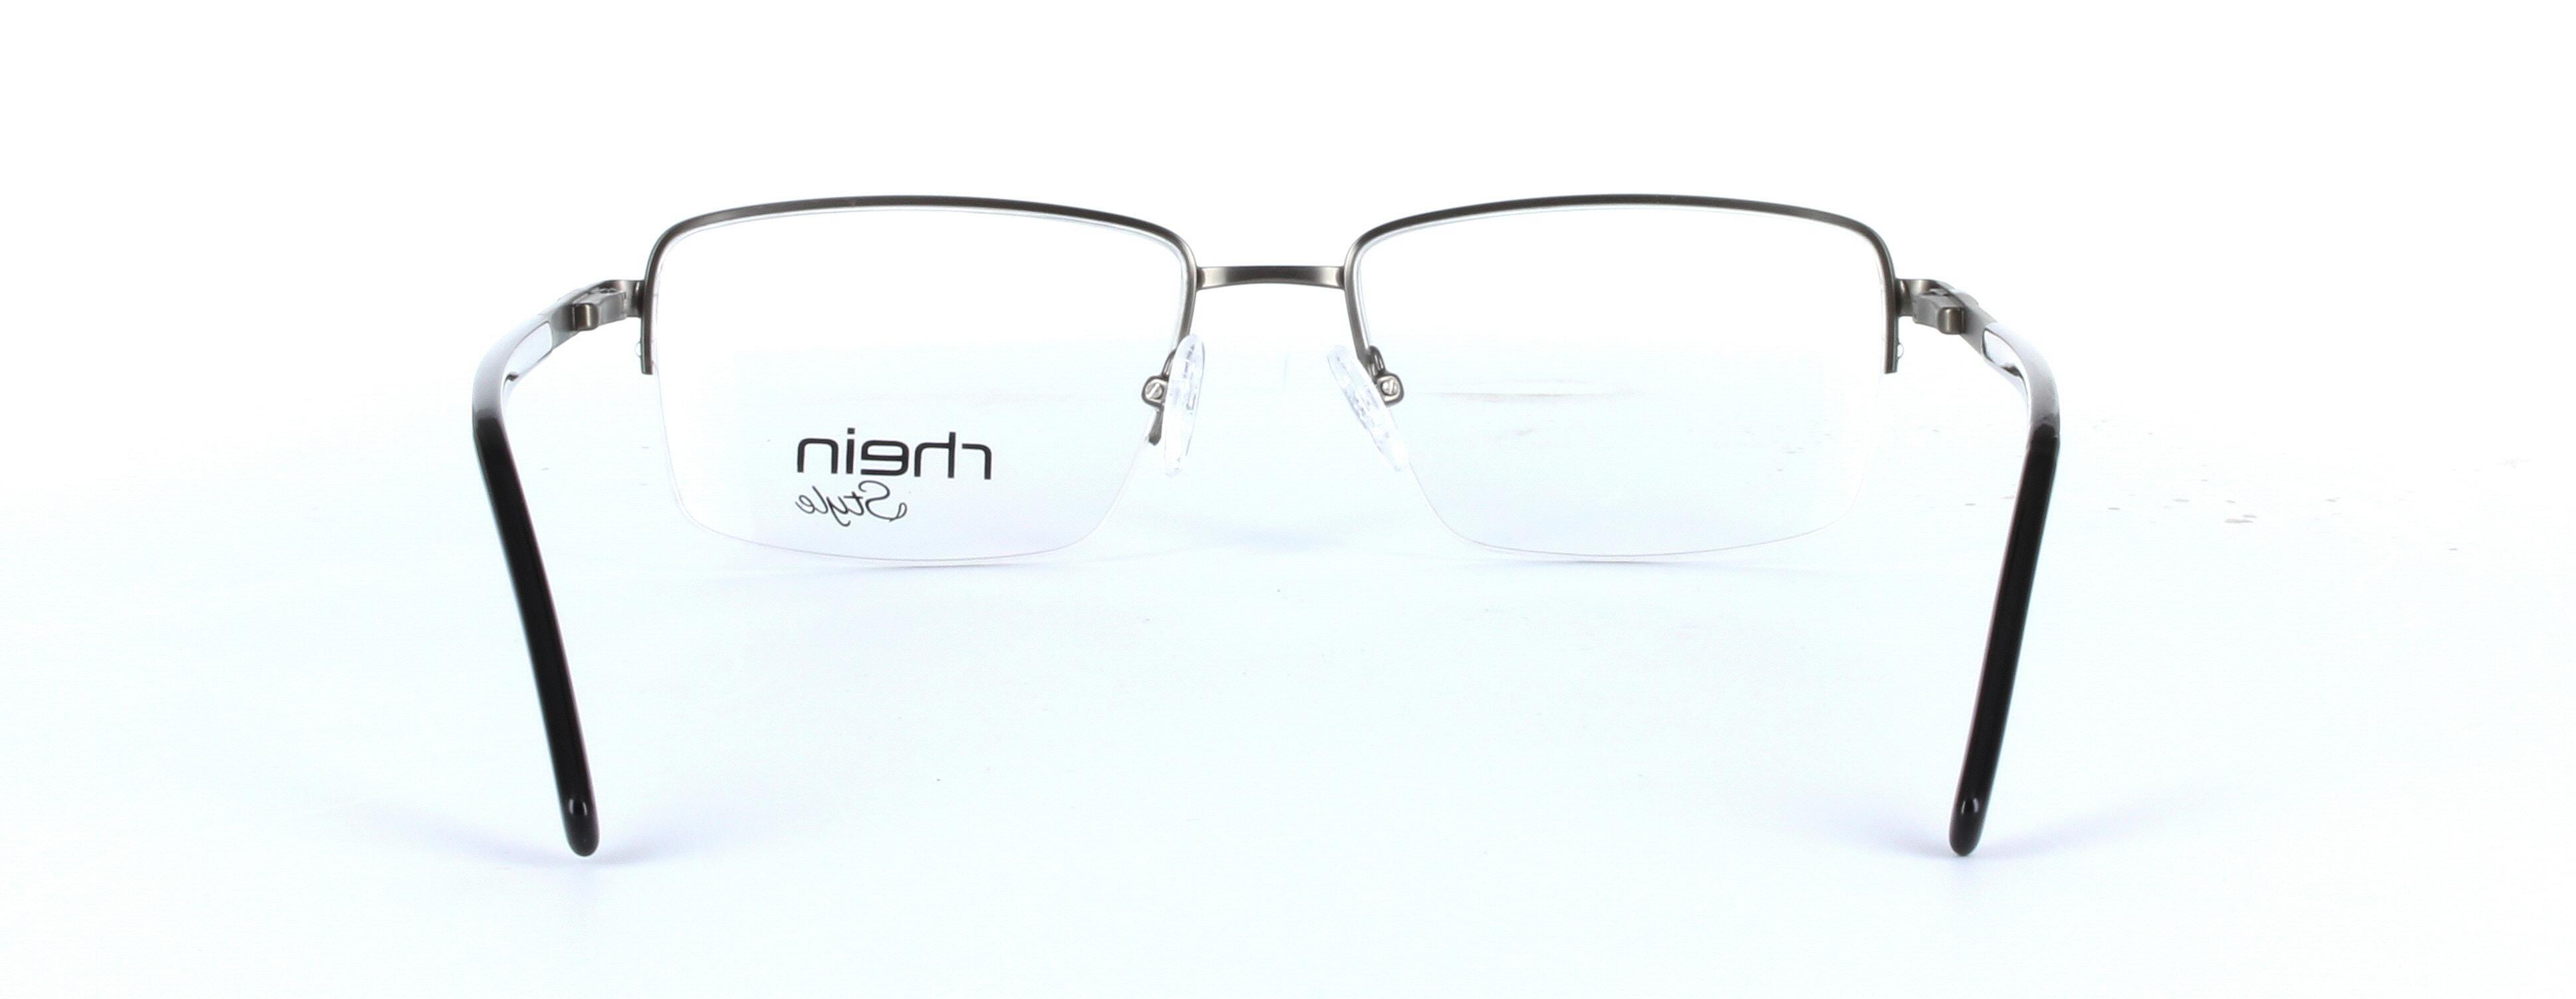 Denver Black Semi Rimless Rectangular Metal Glasses - Image View 3